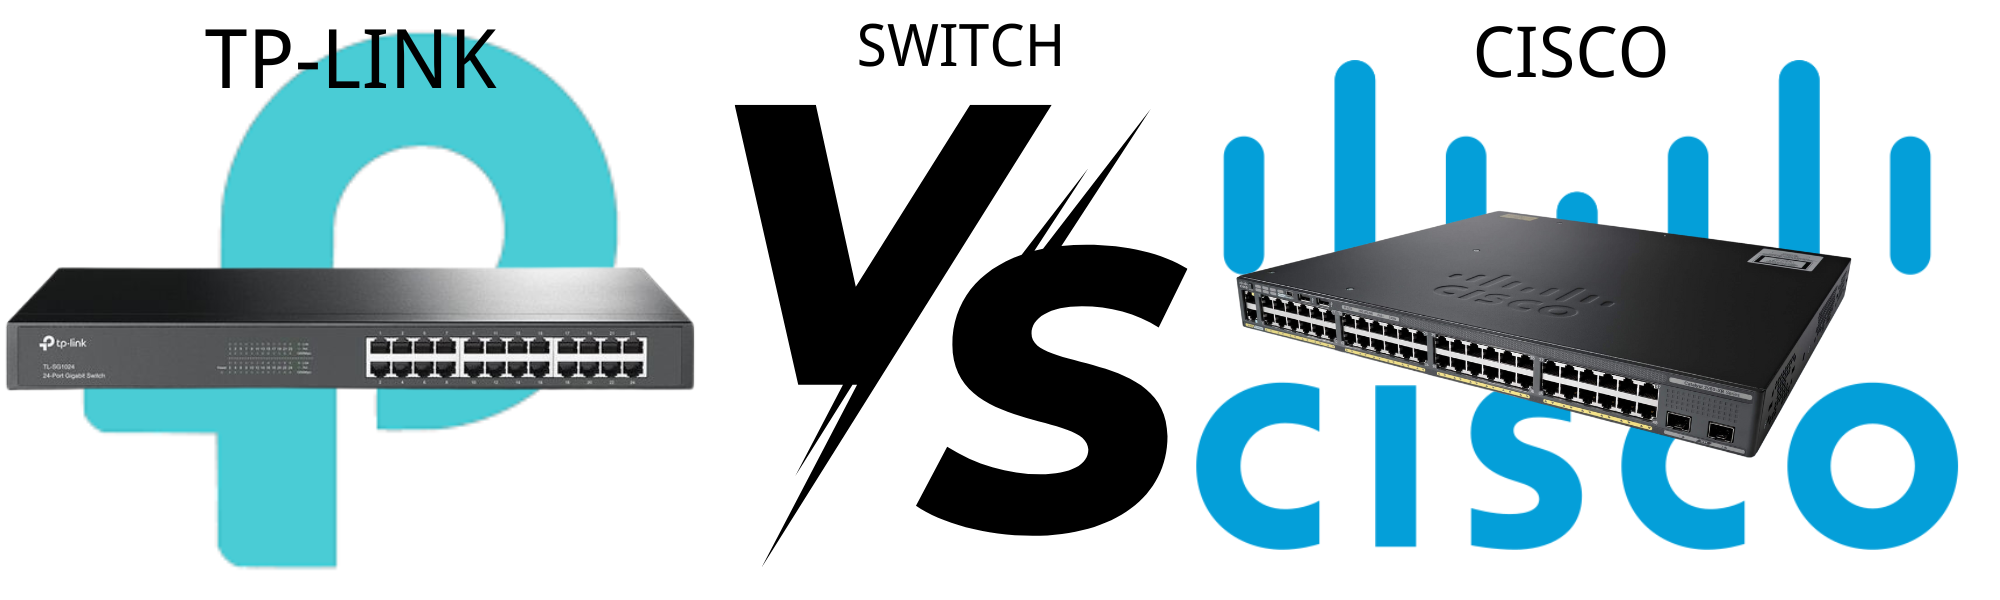 Choosing the Best Multi-Tasking, Multi-Functional Network Switch: TP-Link vs. Cisco